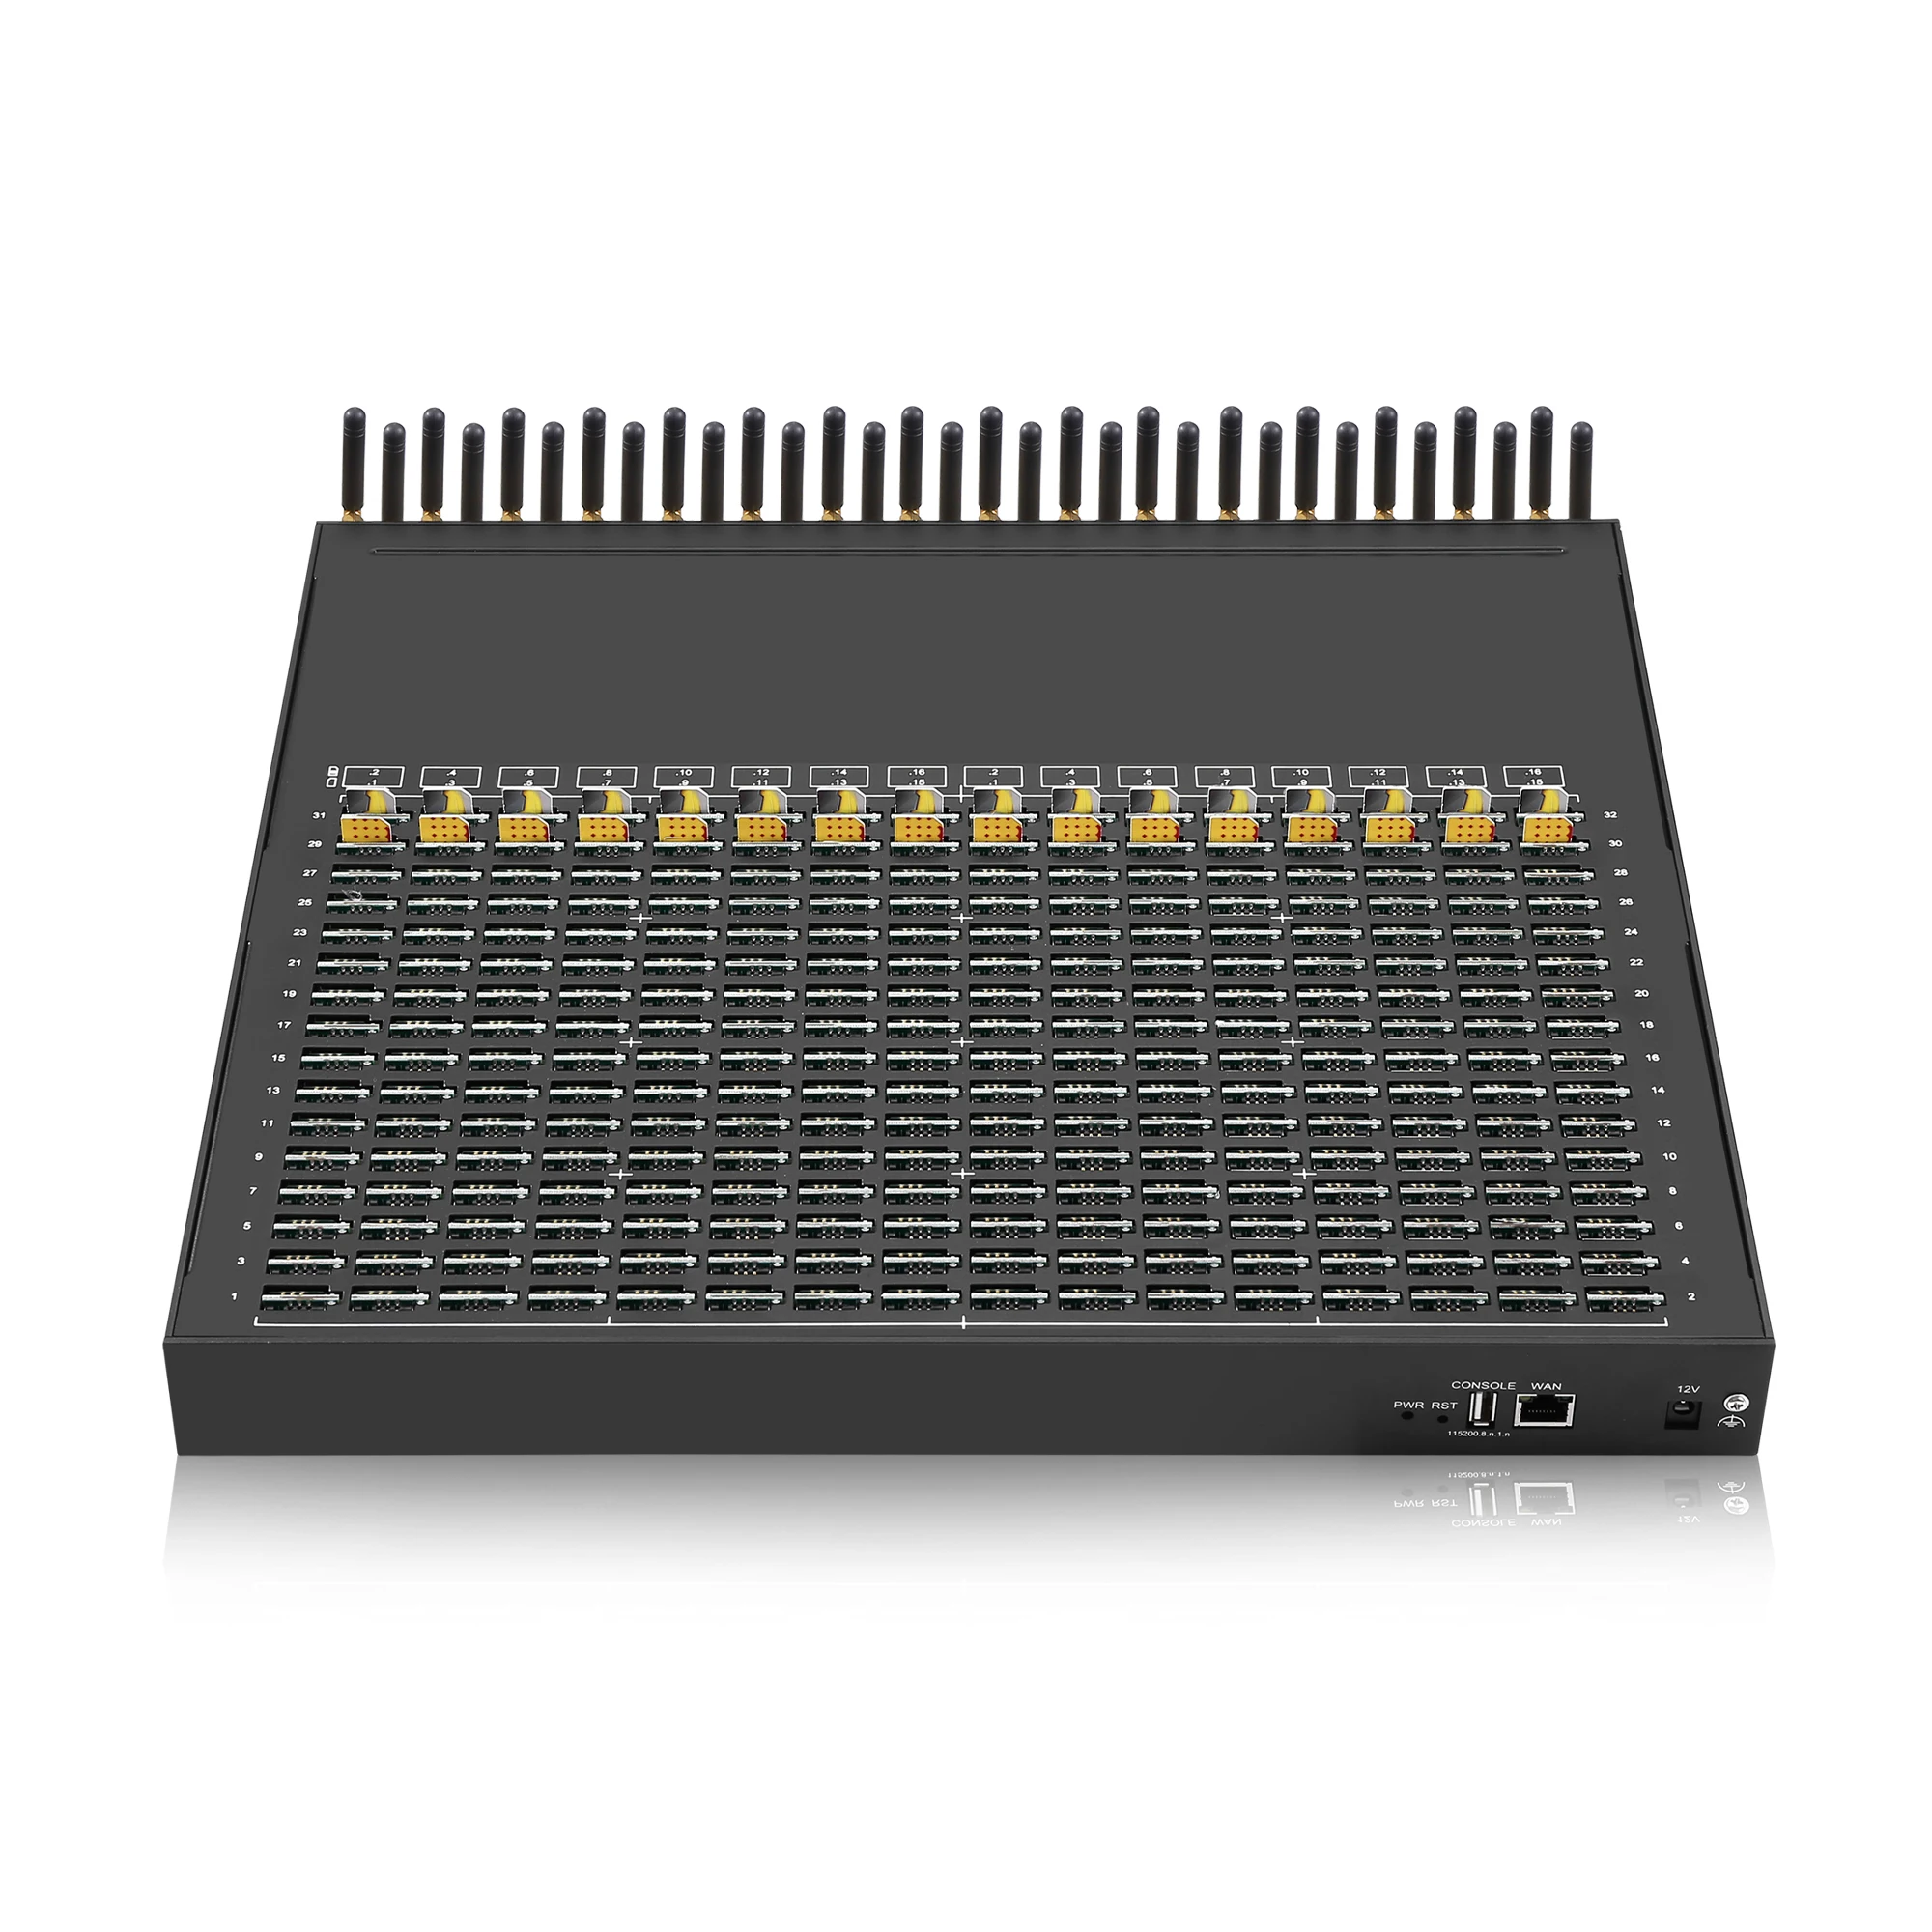 Quectel-lte gateway vip sk32-512, gsm, voz e sms, modem multi-slot, 32 portas, 512 sim, suporte para imei evitar segurança